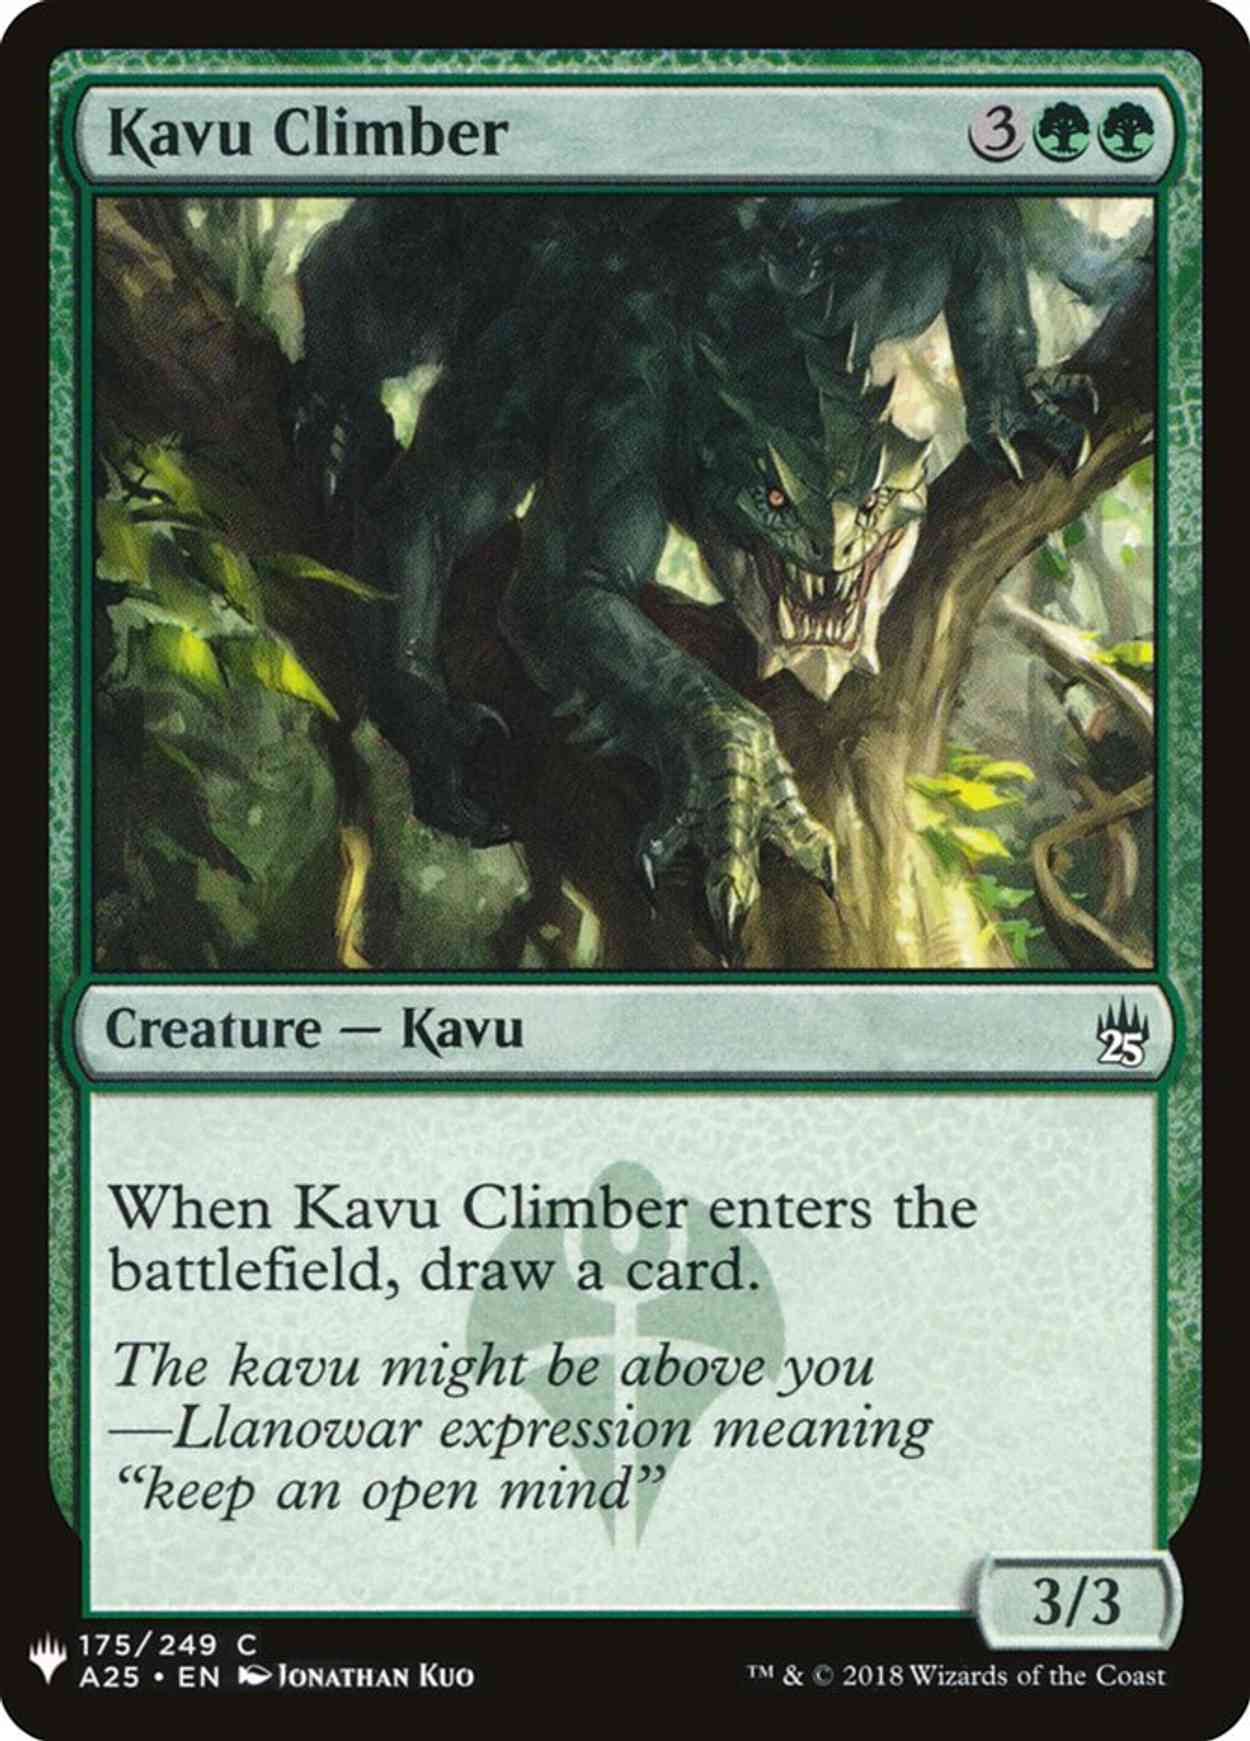 Kavu Climber magic card front